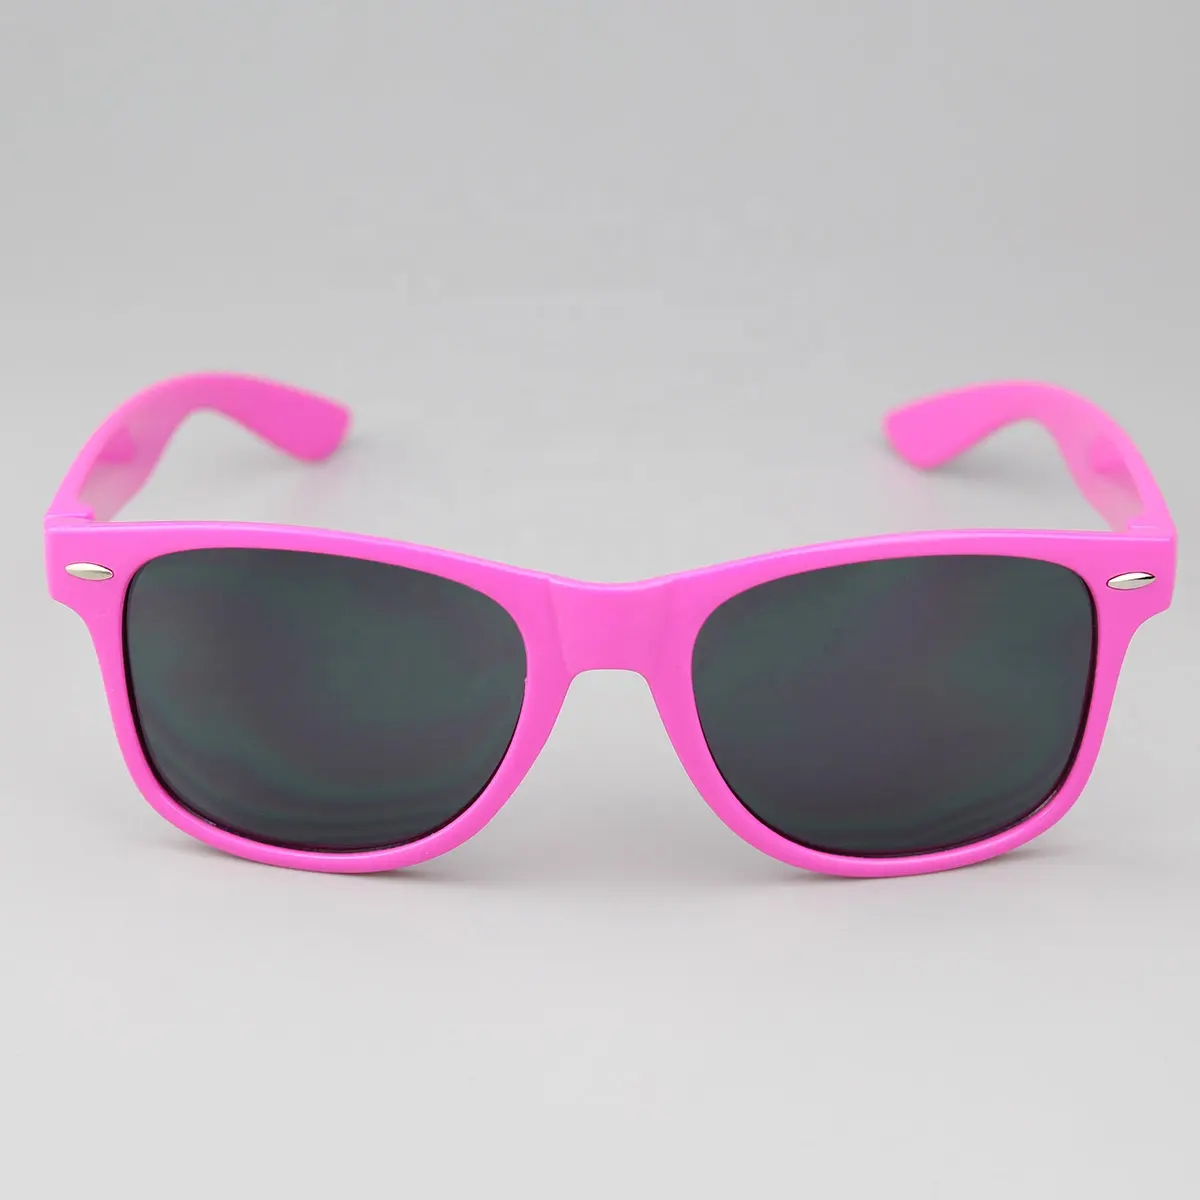 Gül kırmızı promosyon moda lüks özel logo UV400 güneş gözlüğü ucuz plastik tasarımcı ünlü markalar güneş gözlüğü erkekler için